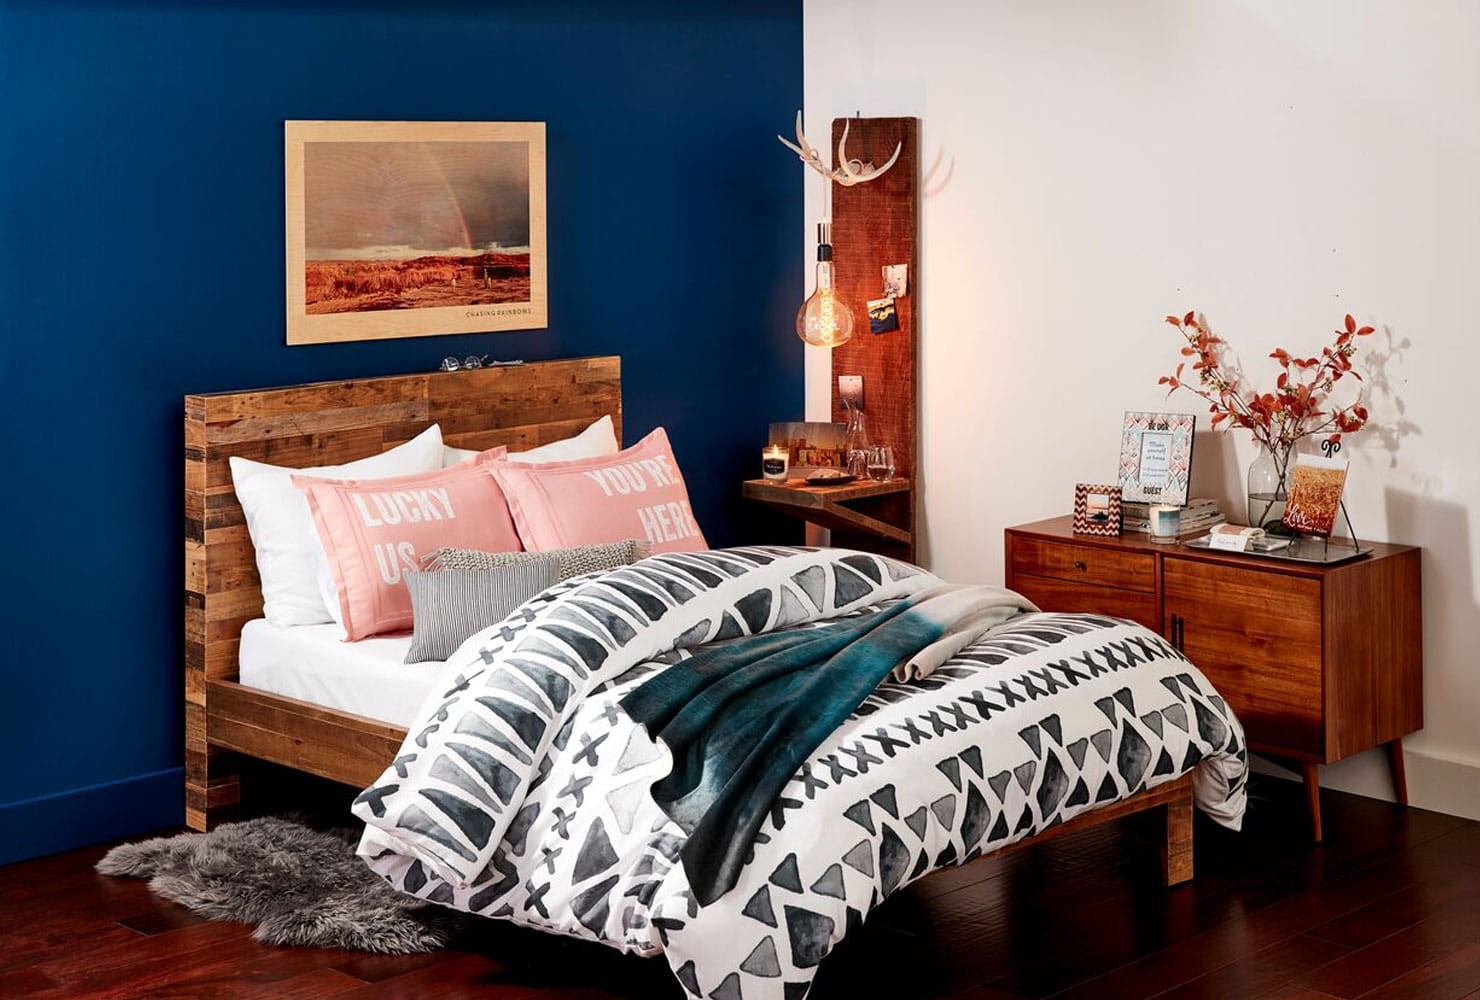 DIY Bedroom Wall Decor
 24 DIY Bedroom Decor Ideas To Inspire You With Printables